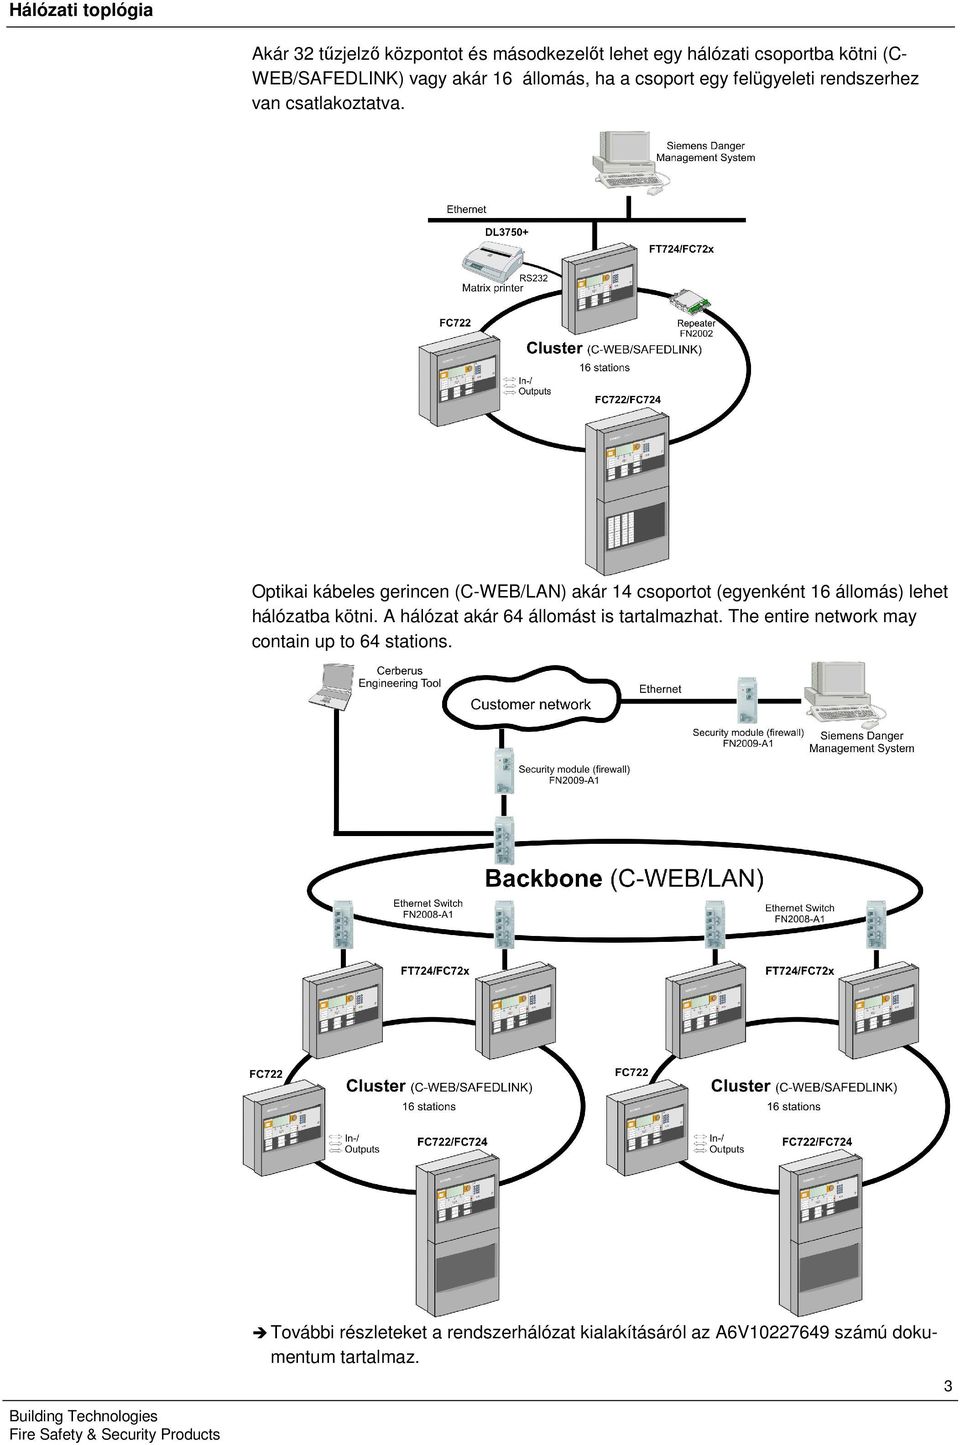 Optikai kábeles gerincen (C-WEB/LAN) akár 4 csoportot (egyenként 6 állomás) lehet hálózatba kötni.